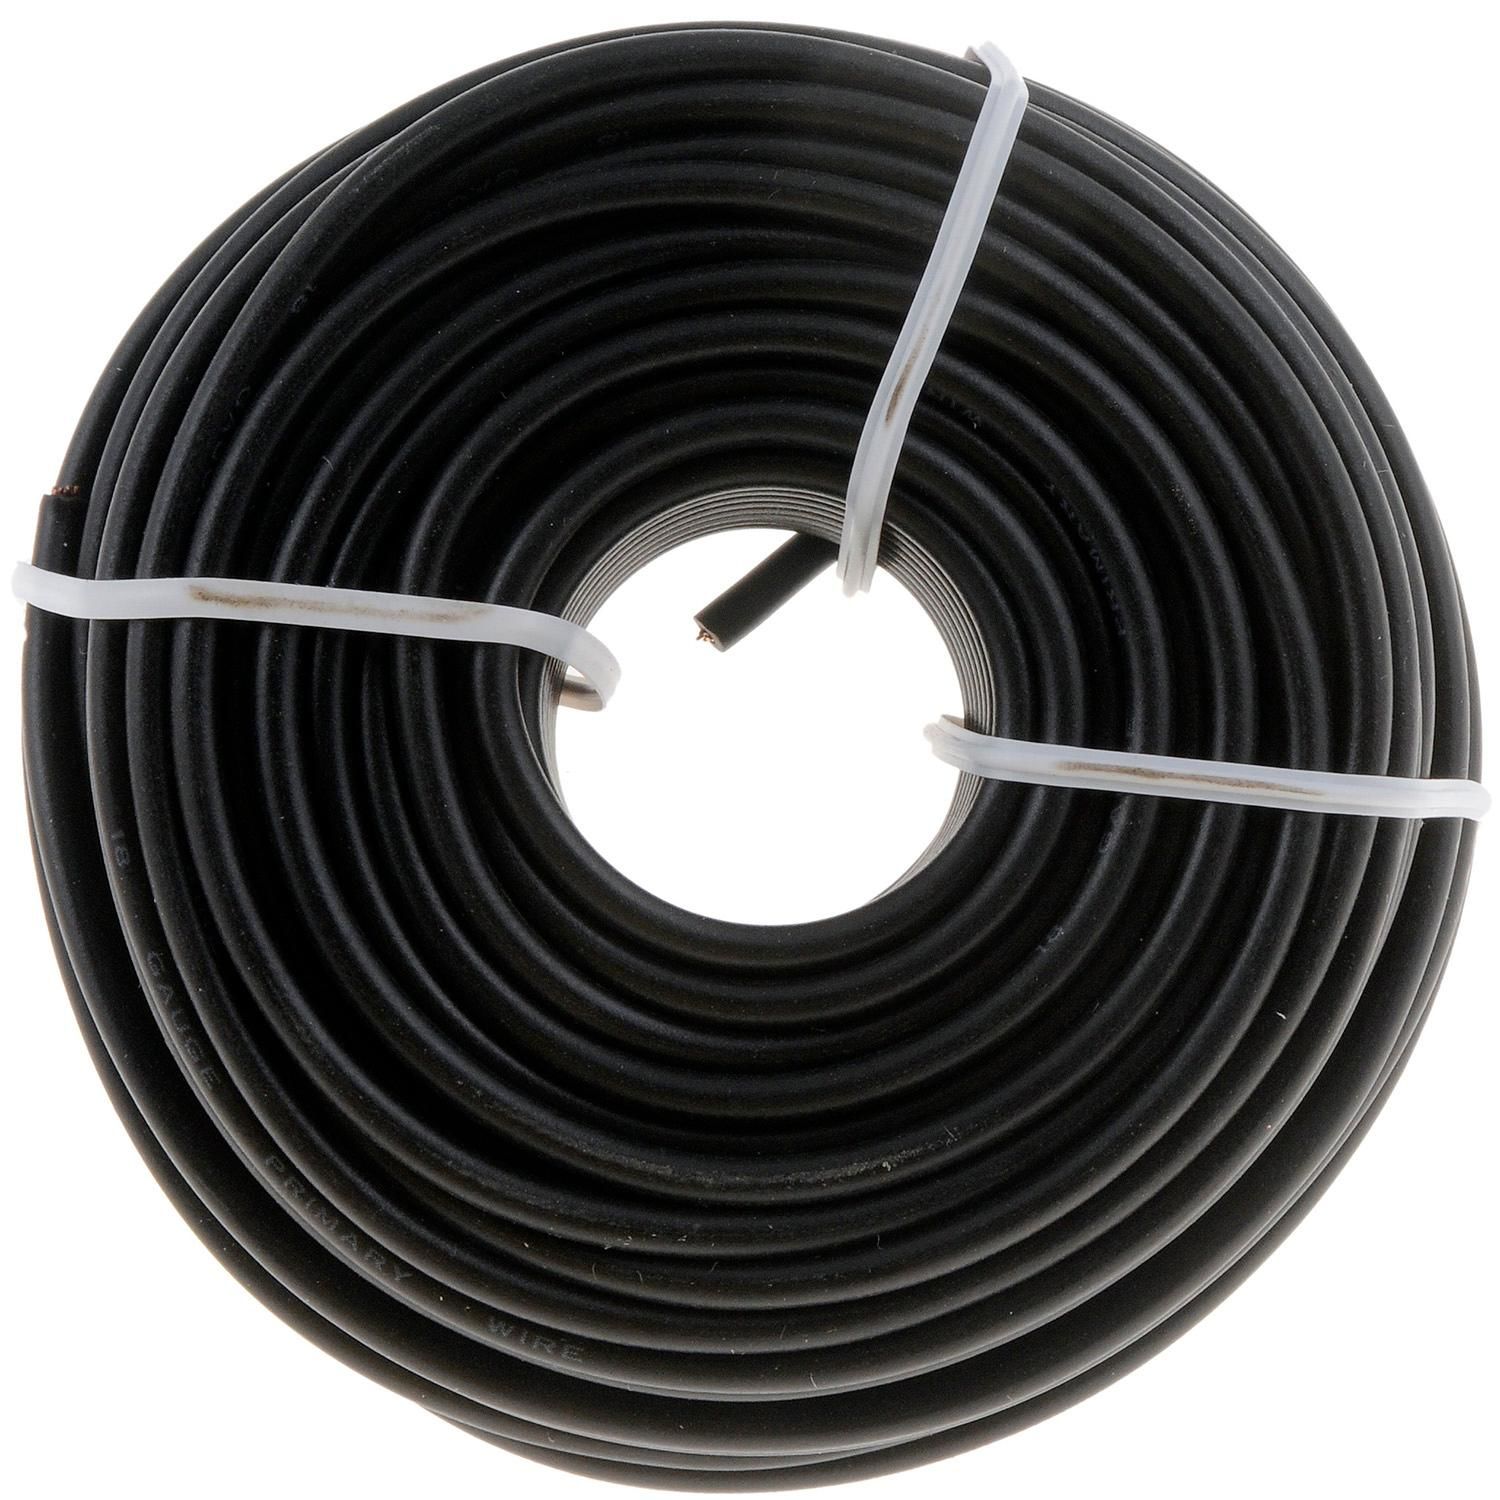 TPS-4CPR-100B - 100' Copper Flexible Primary Wire - Black